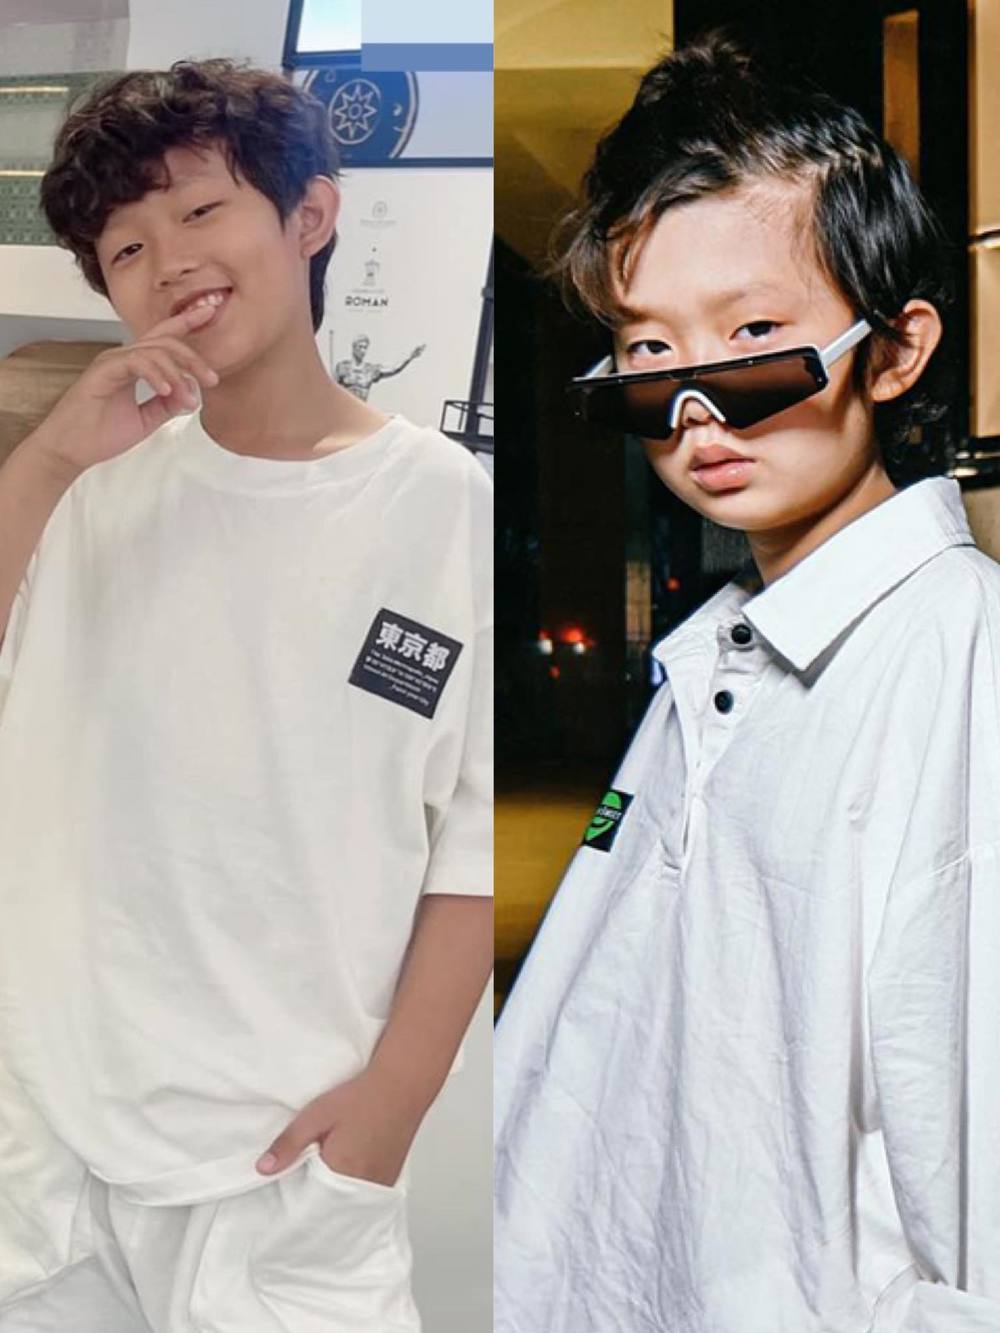  
Cậu bé Nhật Huy càng lớn càng đẹp trai và phong độ. (Ảnh: Instagram @ken30.09)